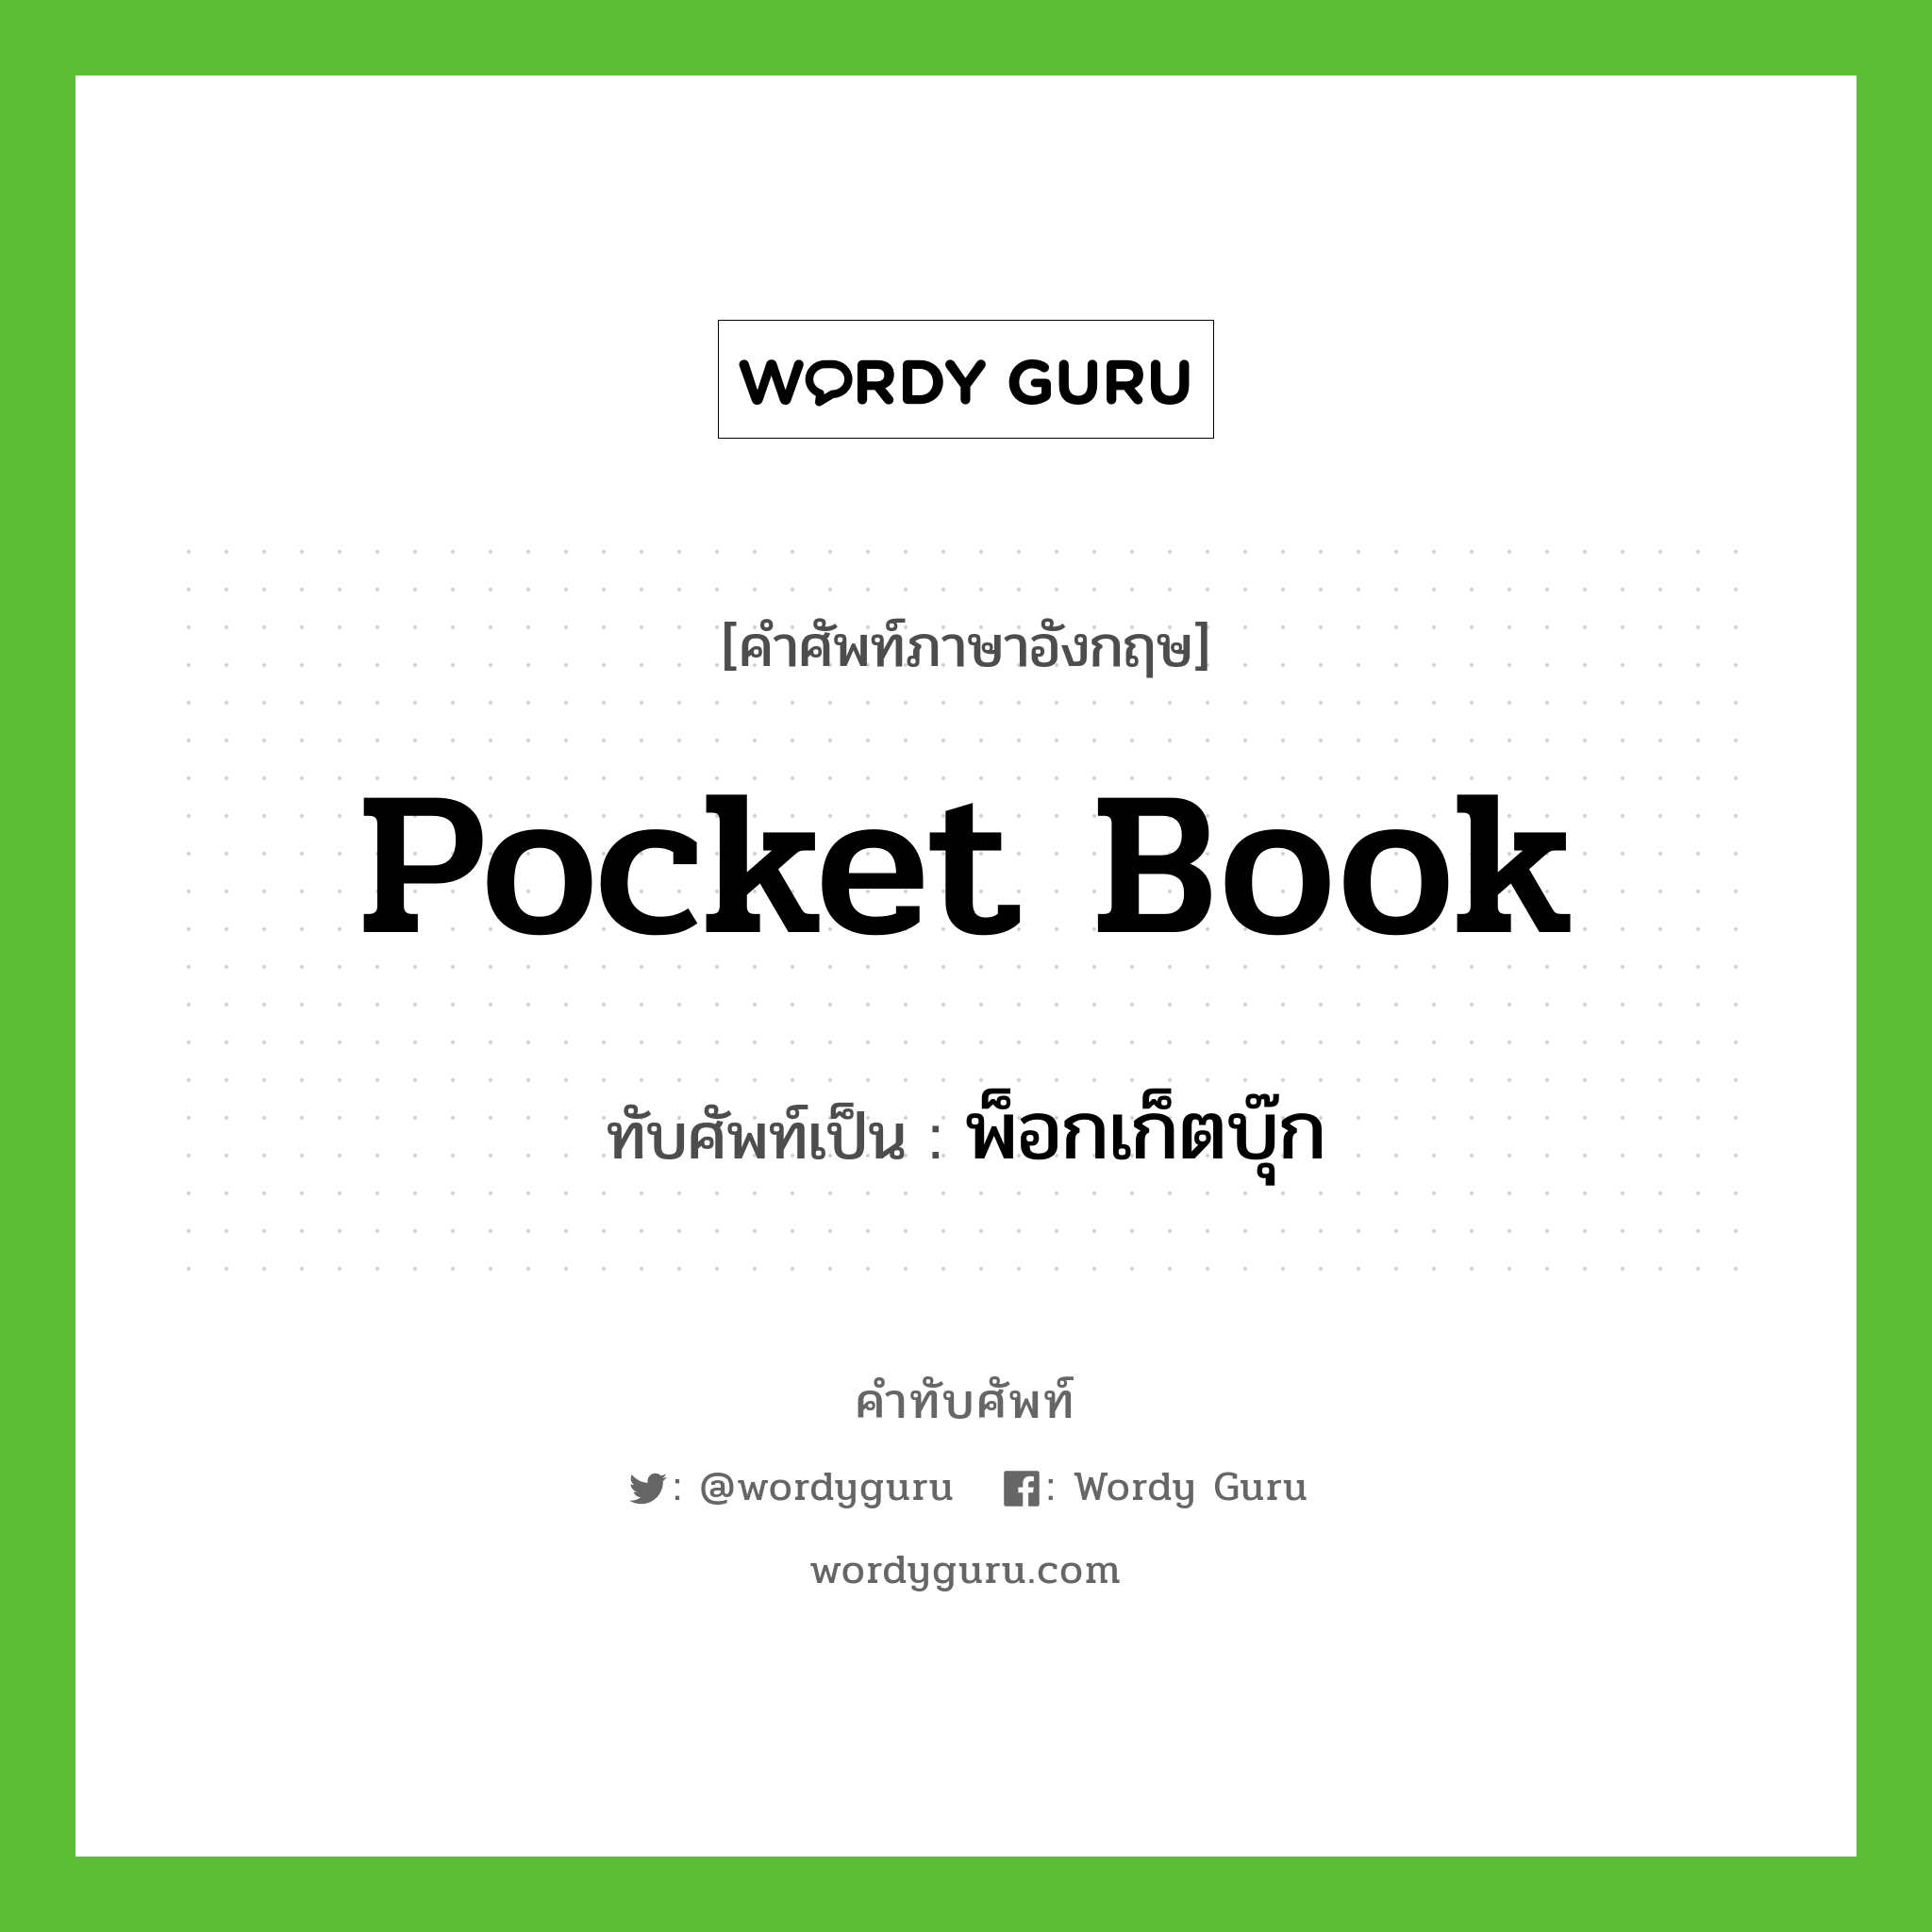 pocket book เขียนเป็นคำไทยว่าอะไร?, คำศัพท์ภาษาอังกฤษ pocket book ทับศัพท์เป็น พ็อกเก็ตบุ๊ก